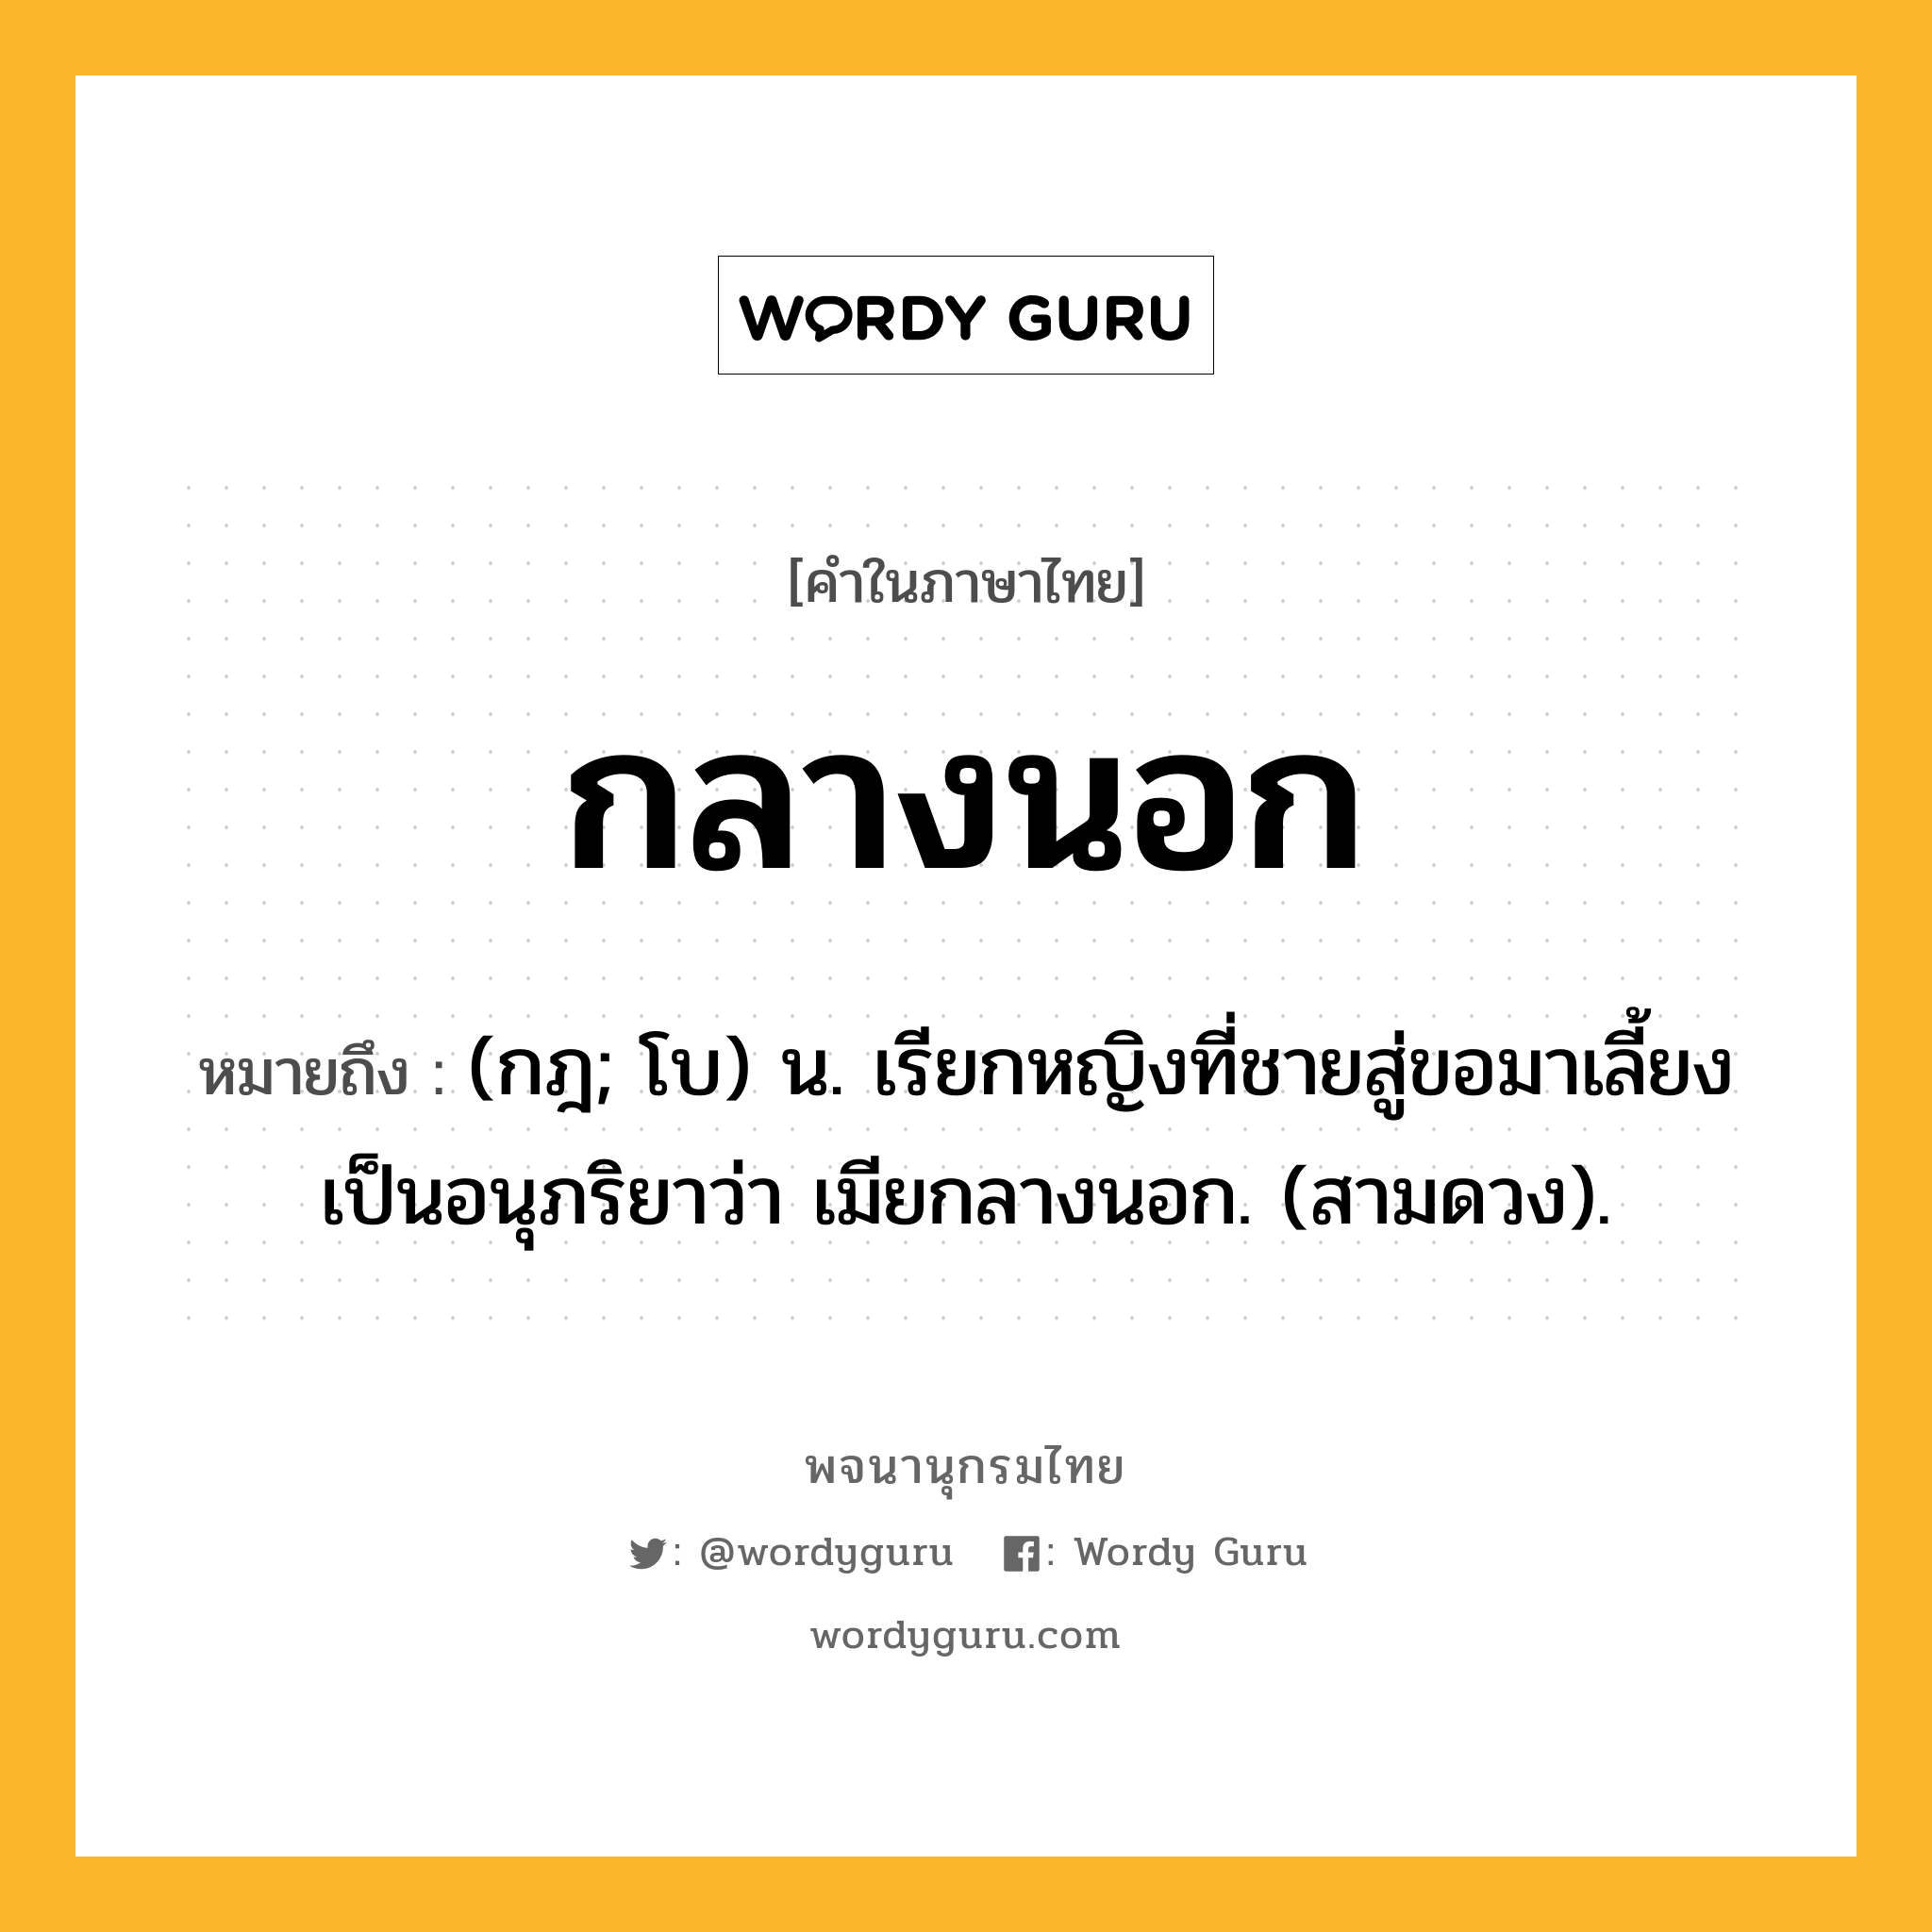 กลางนอก หมายถึงอะไร?, คำในภาษาไทย กลางนอก หมายถึง (กฎ; โบ) น. เรียกหญิงที่ชายสู่ขอมาเลี้ยงเป็นอนุภริยาว่า เมียกลางนอก. (สามดวง).